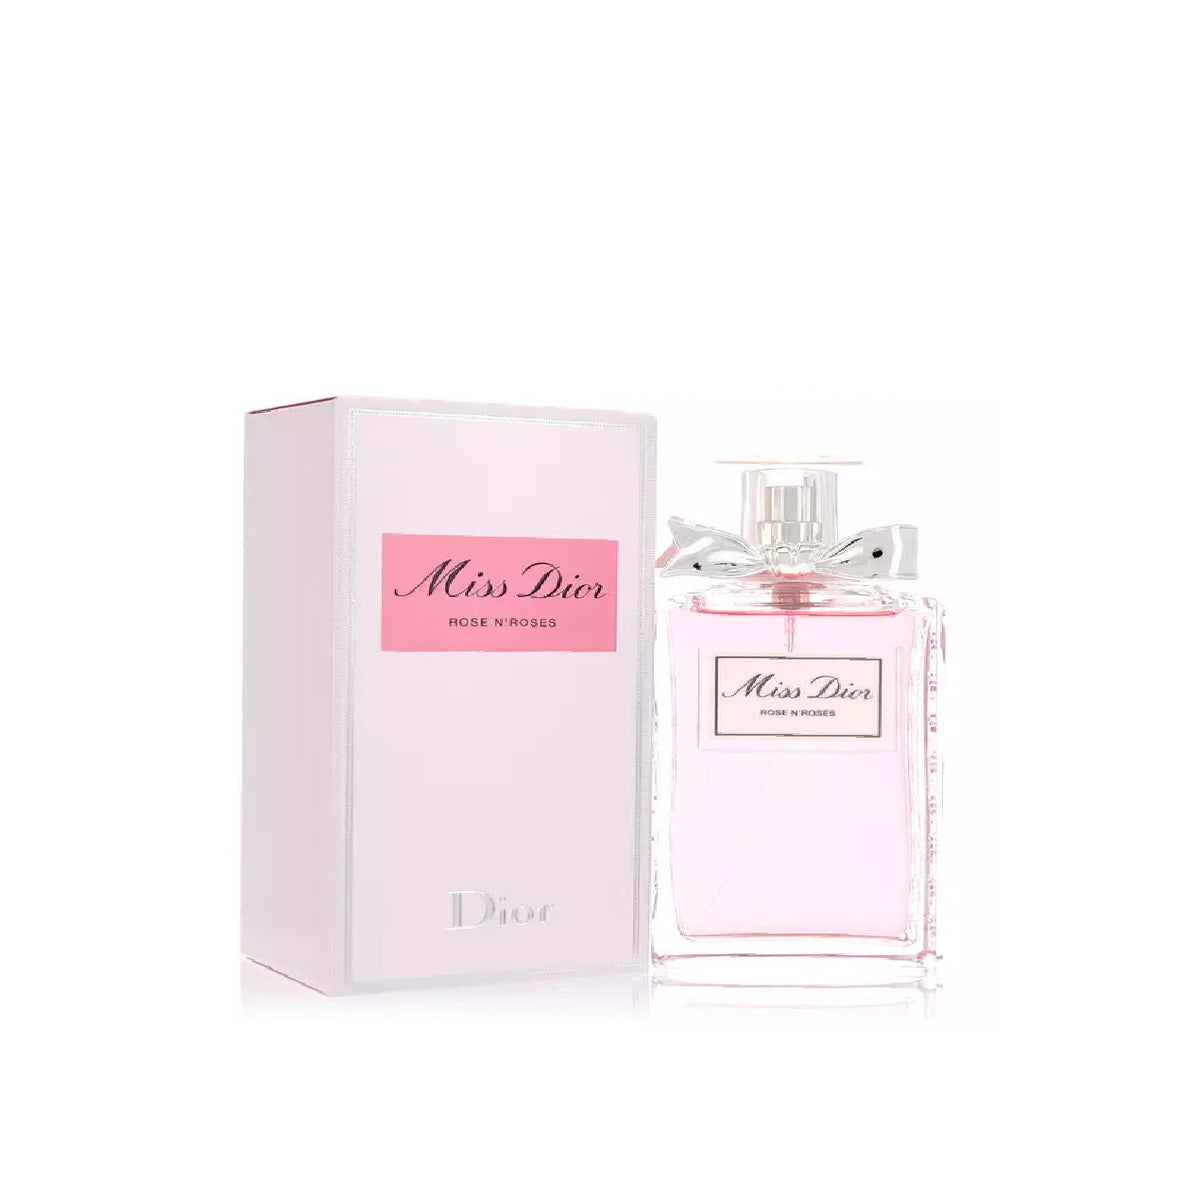 Miss Dior Rose N'roses Perfume